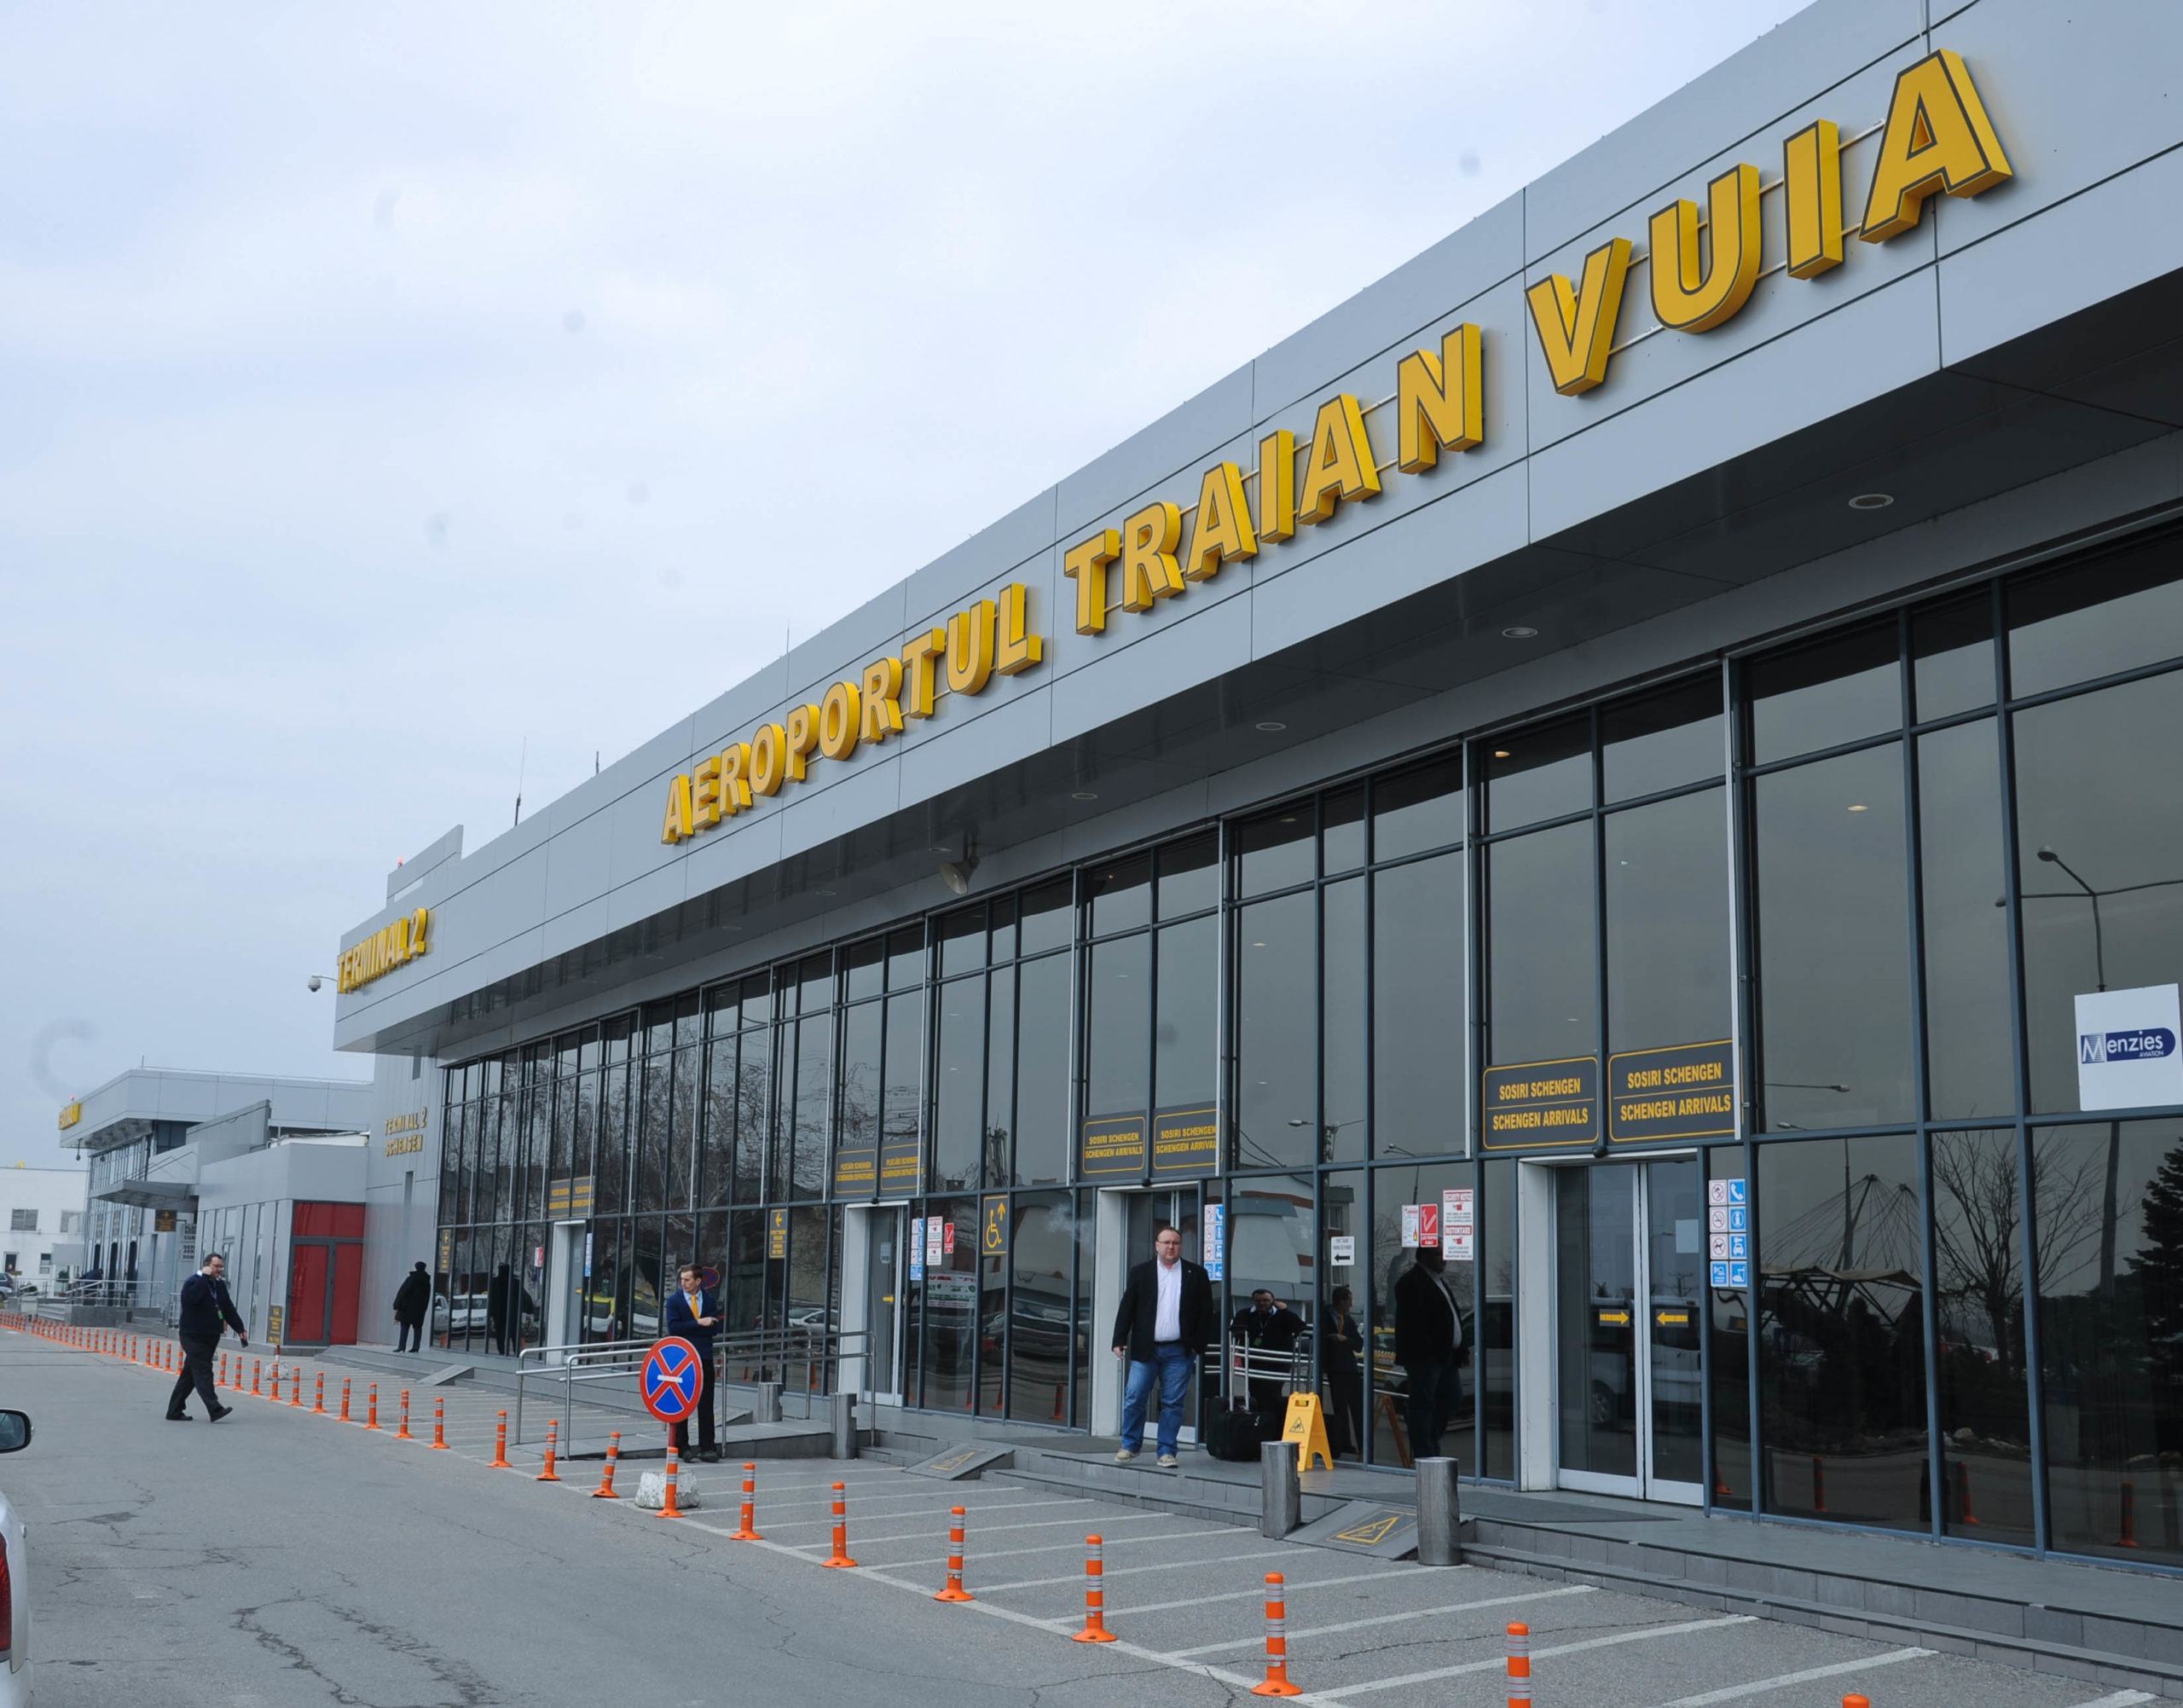 Aeroport Timisoara  scaled